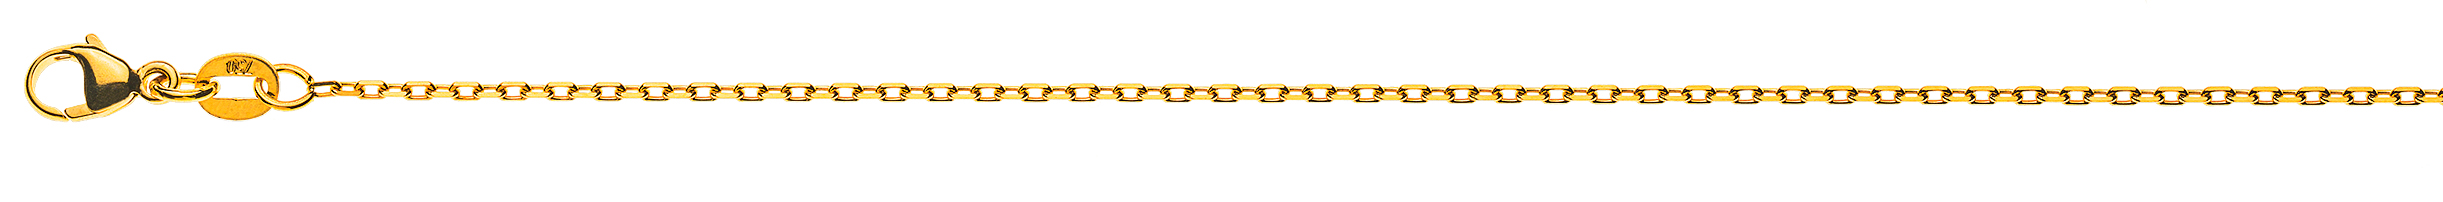 AURONOS Prestige Halskette Gelbgold 18K 4-Fach geschliffen Anker 42cm 1.4mm